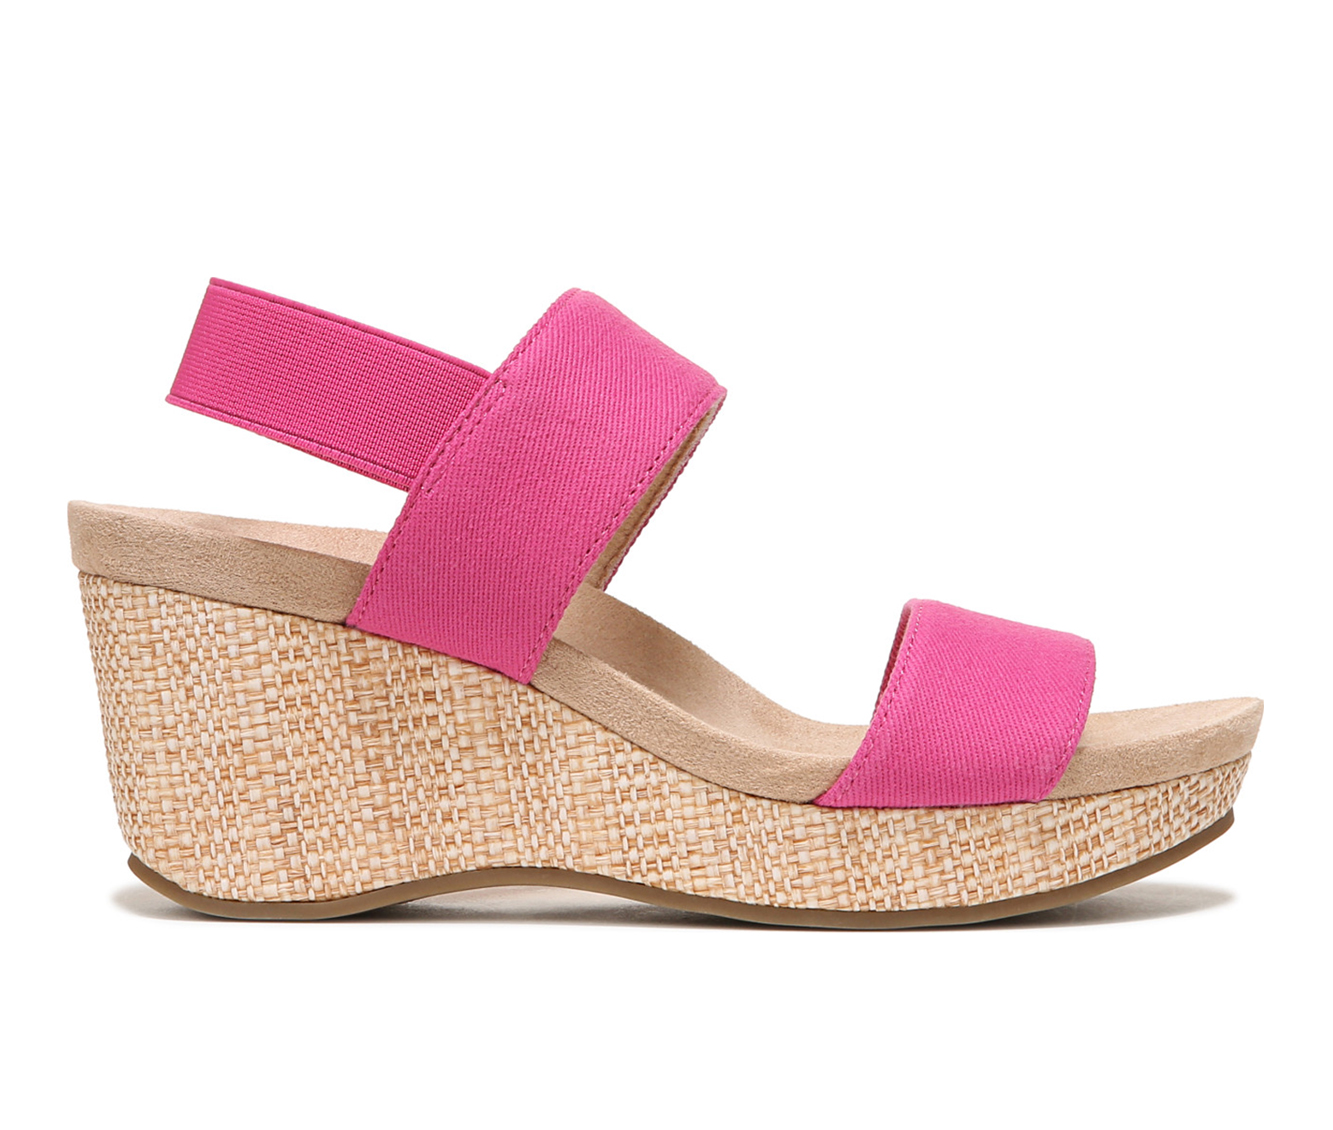 Women's LifeStride Delta Wedges Sandals in Raspberry Pink Size 5.5 Medium